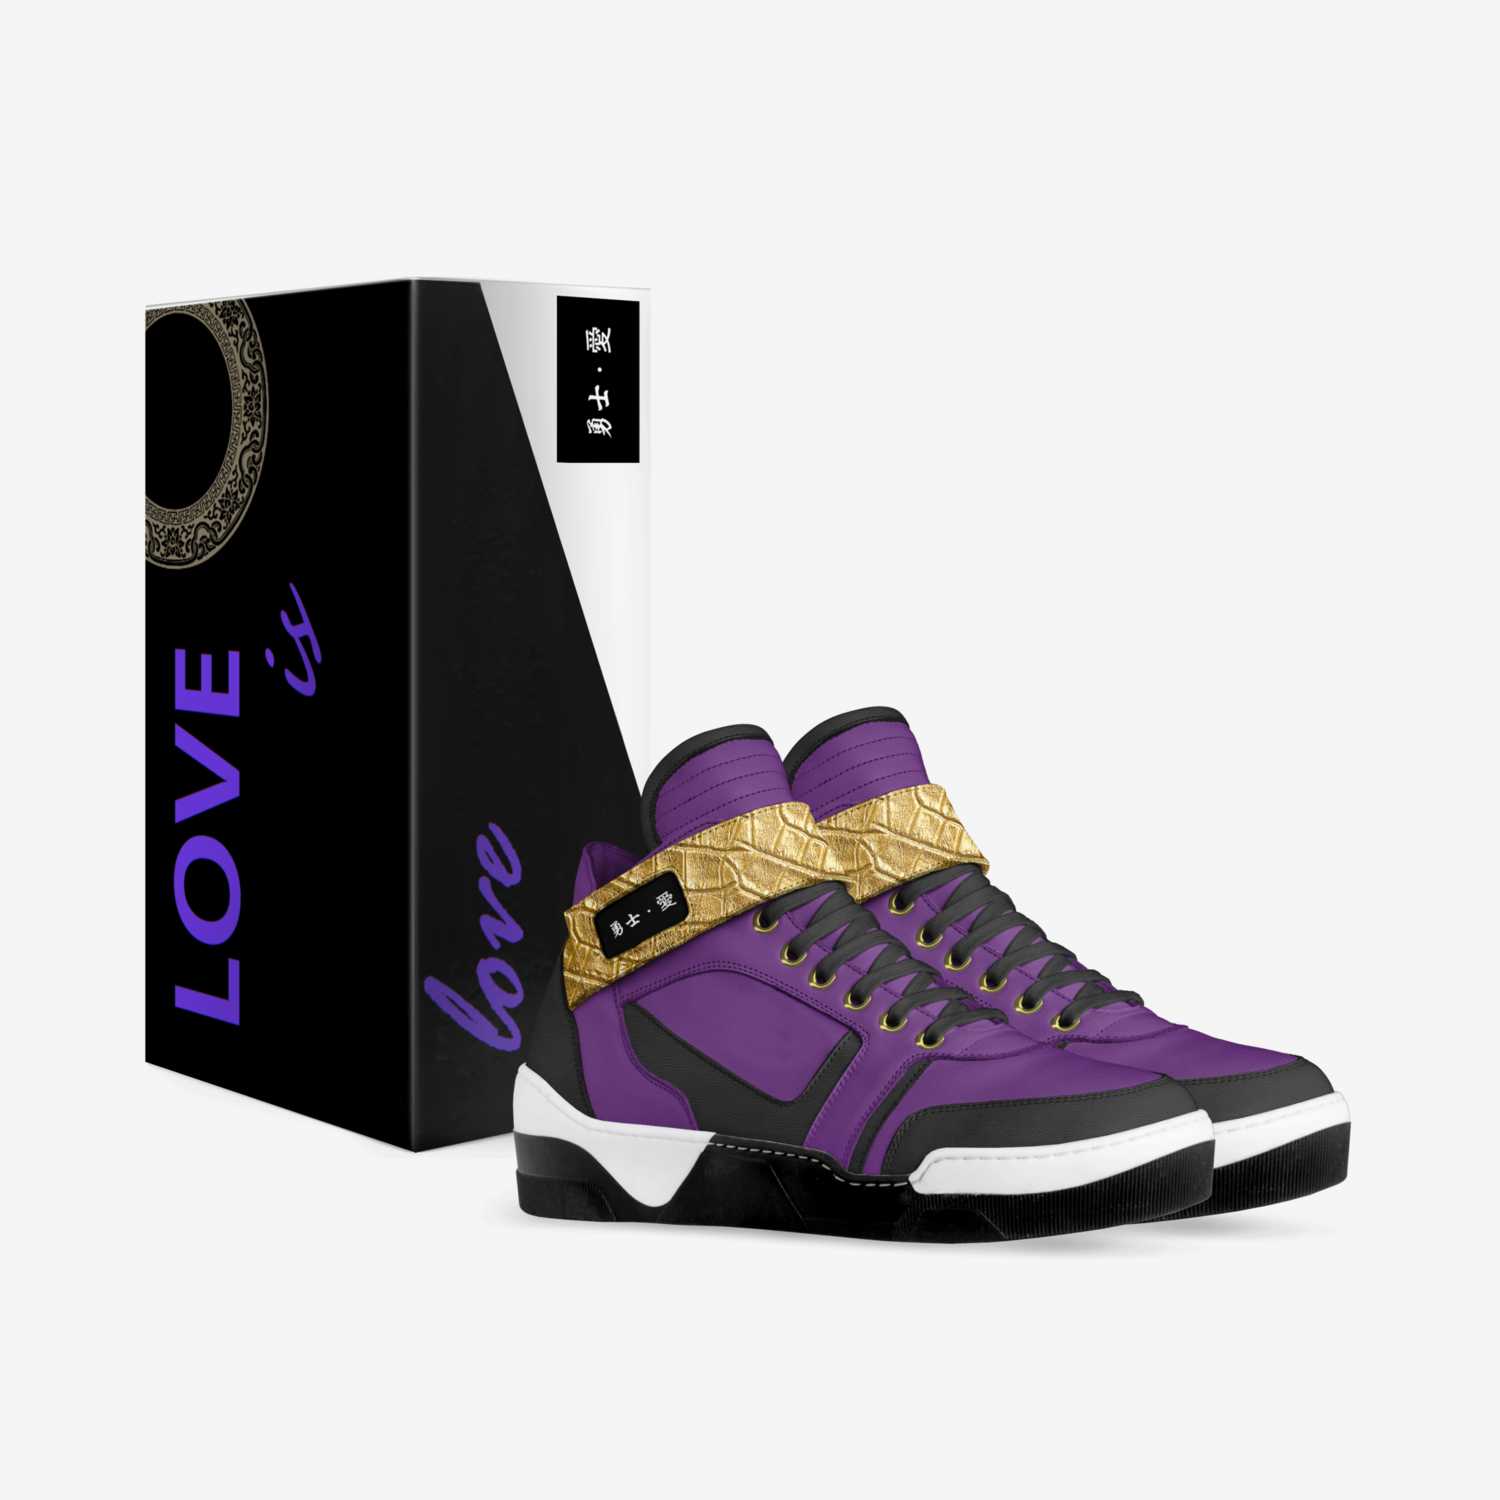 勇士。愛 custom made in Italy shoes by Bonnie Leung | Box view